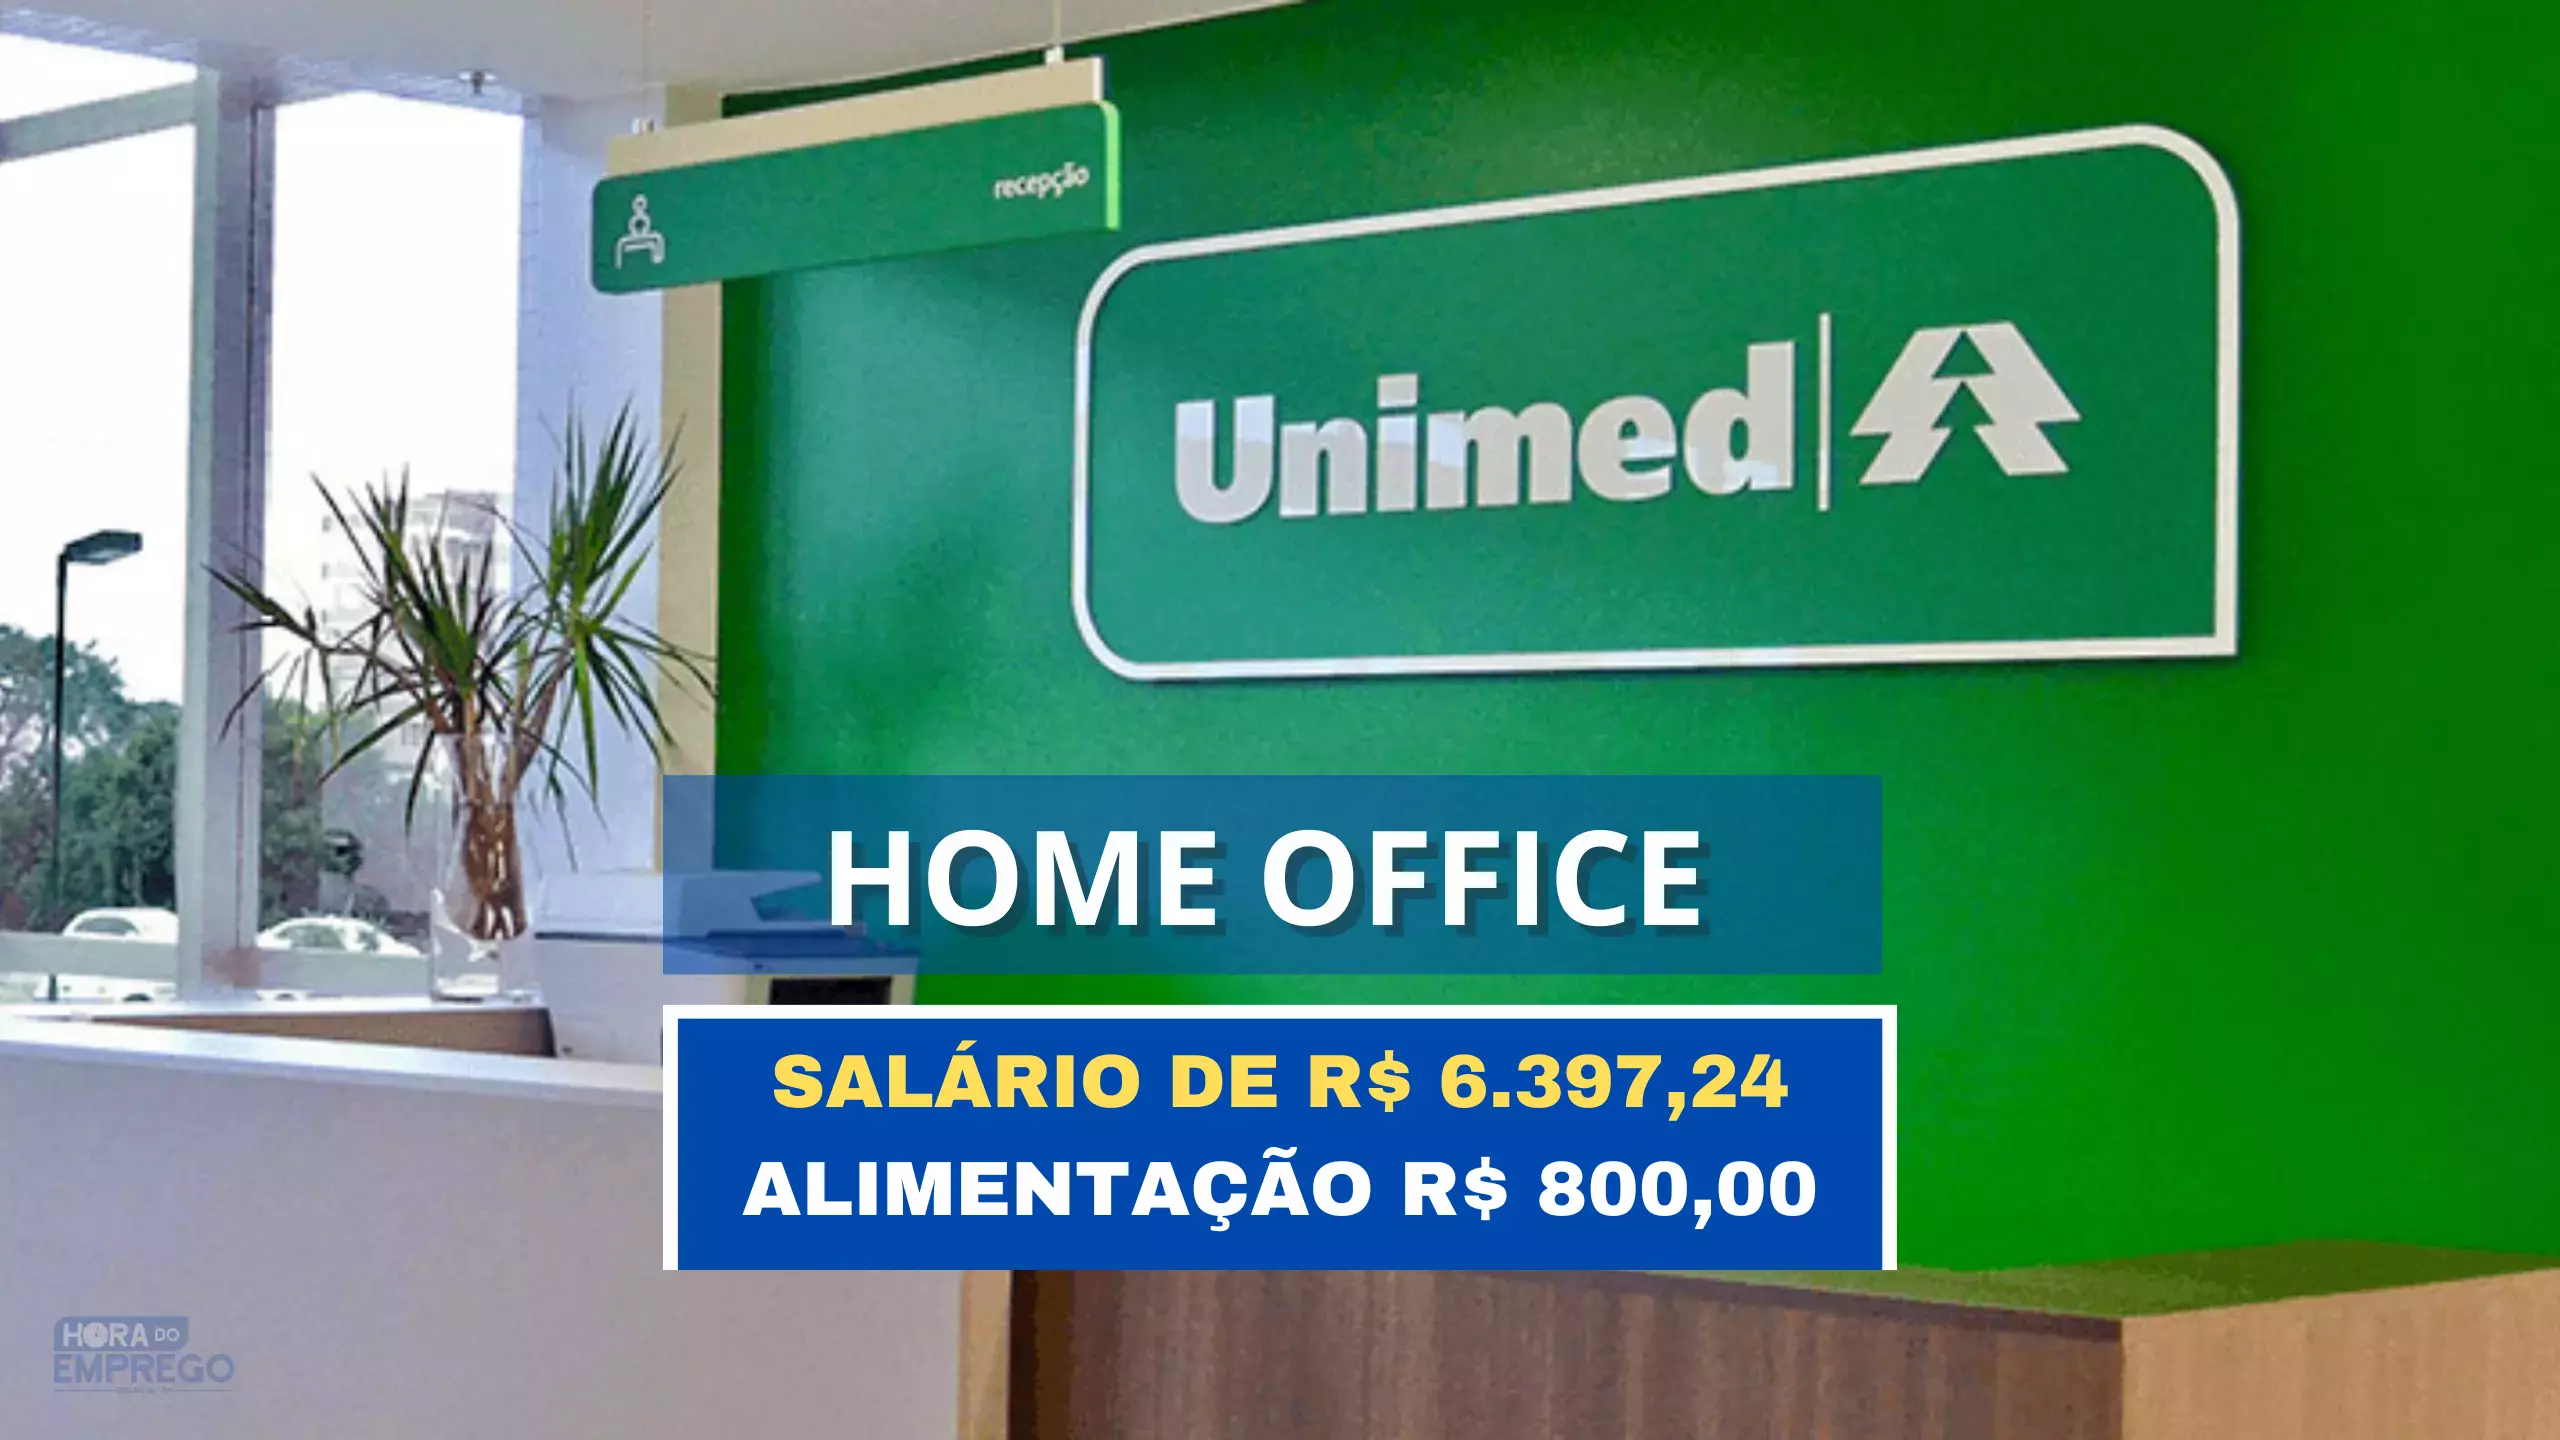 UNIMED anuncia vaga 100% HOME OFFICE com salário de R$ 6.397,24 e Alimentação R$ 800,00